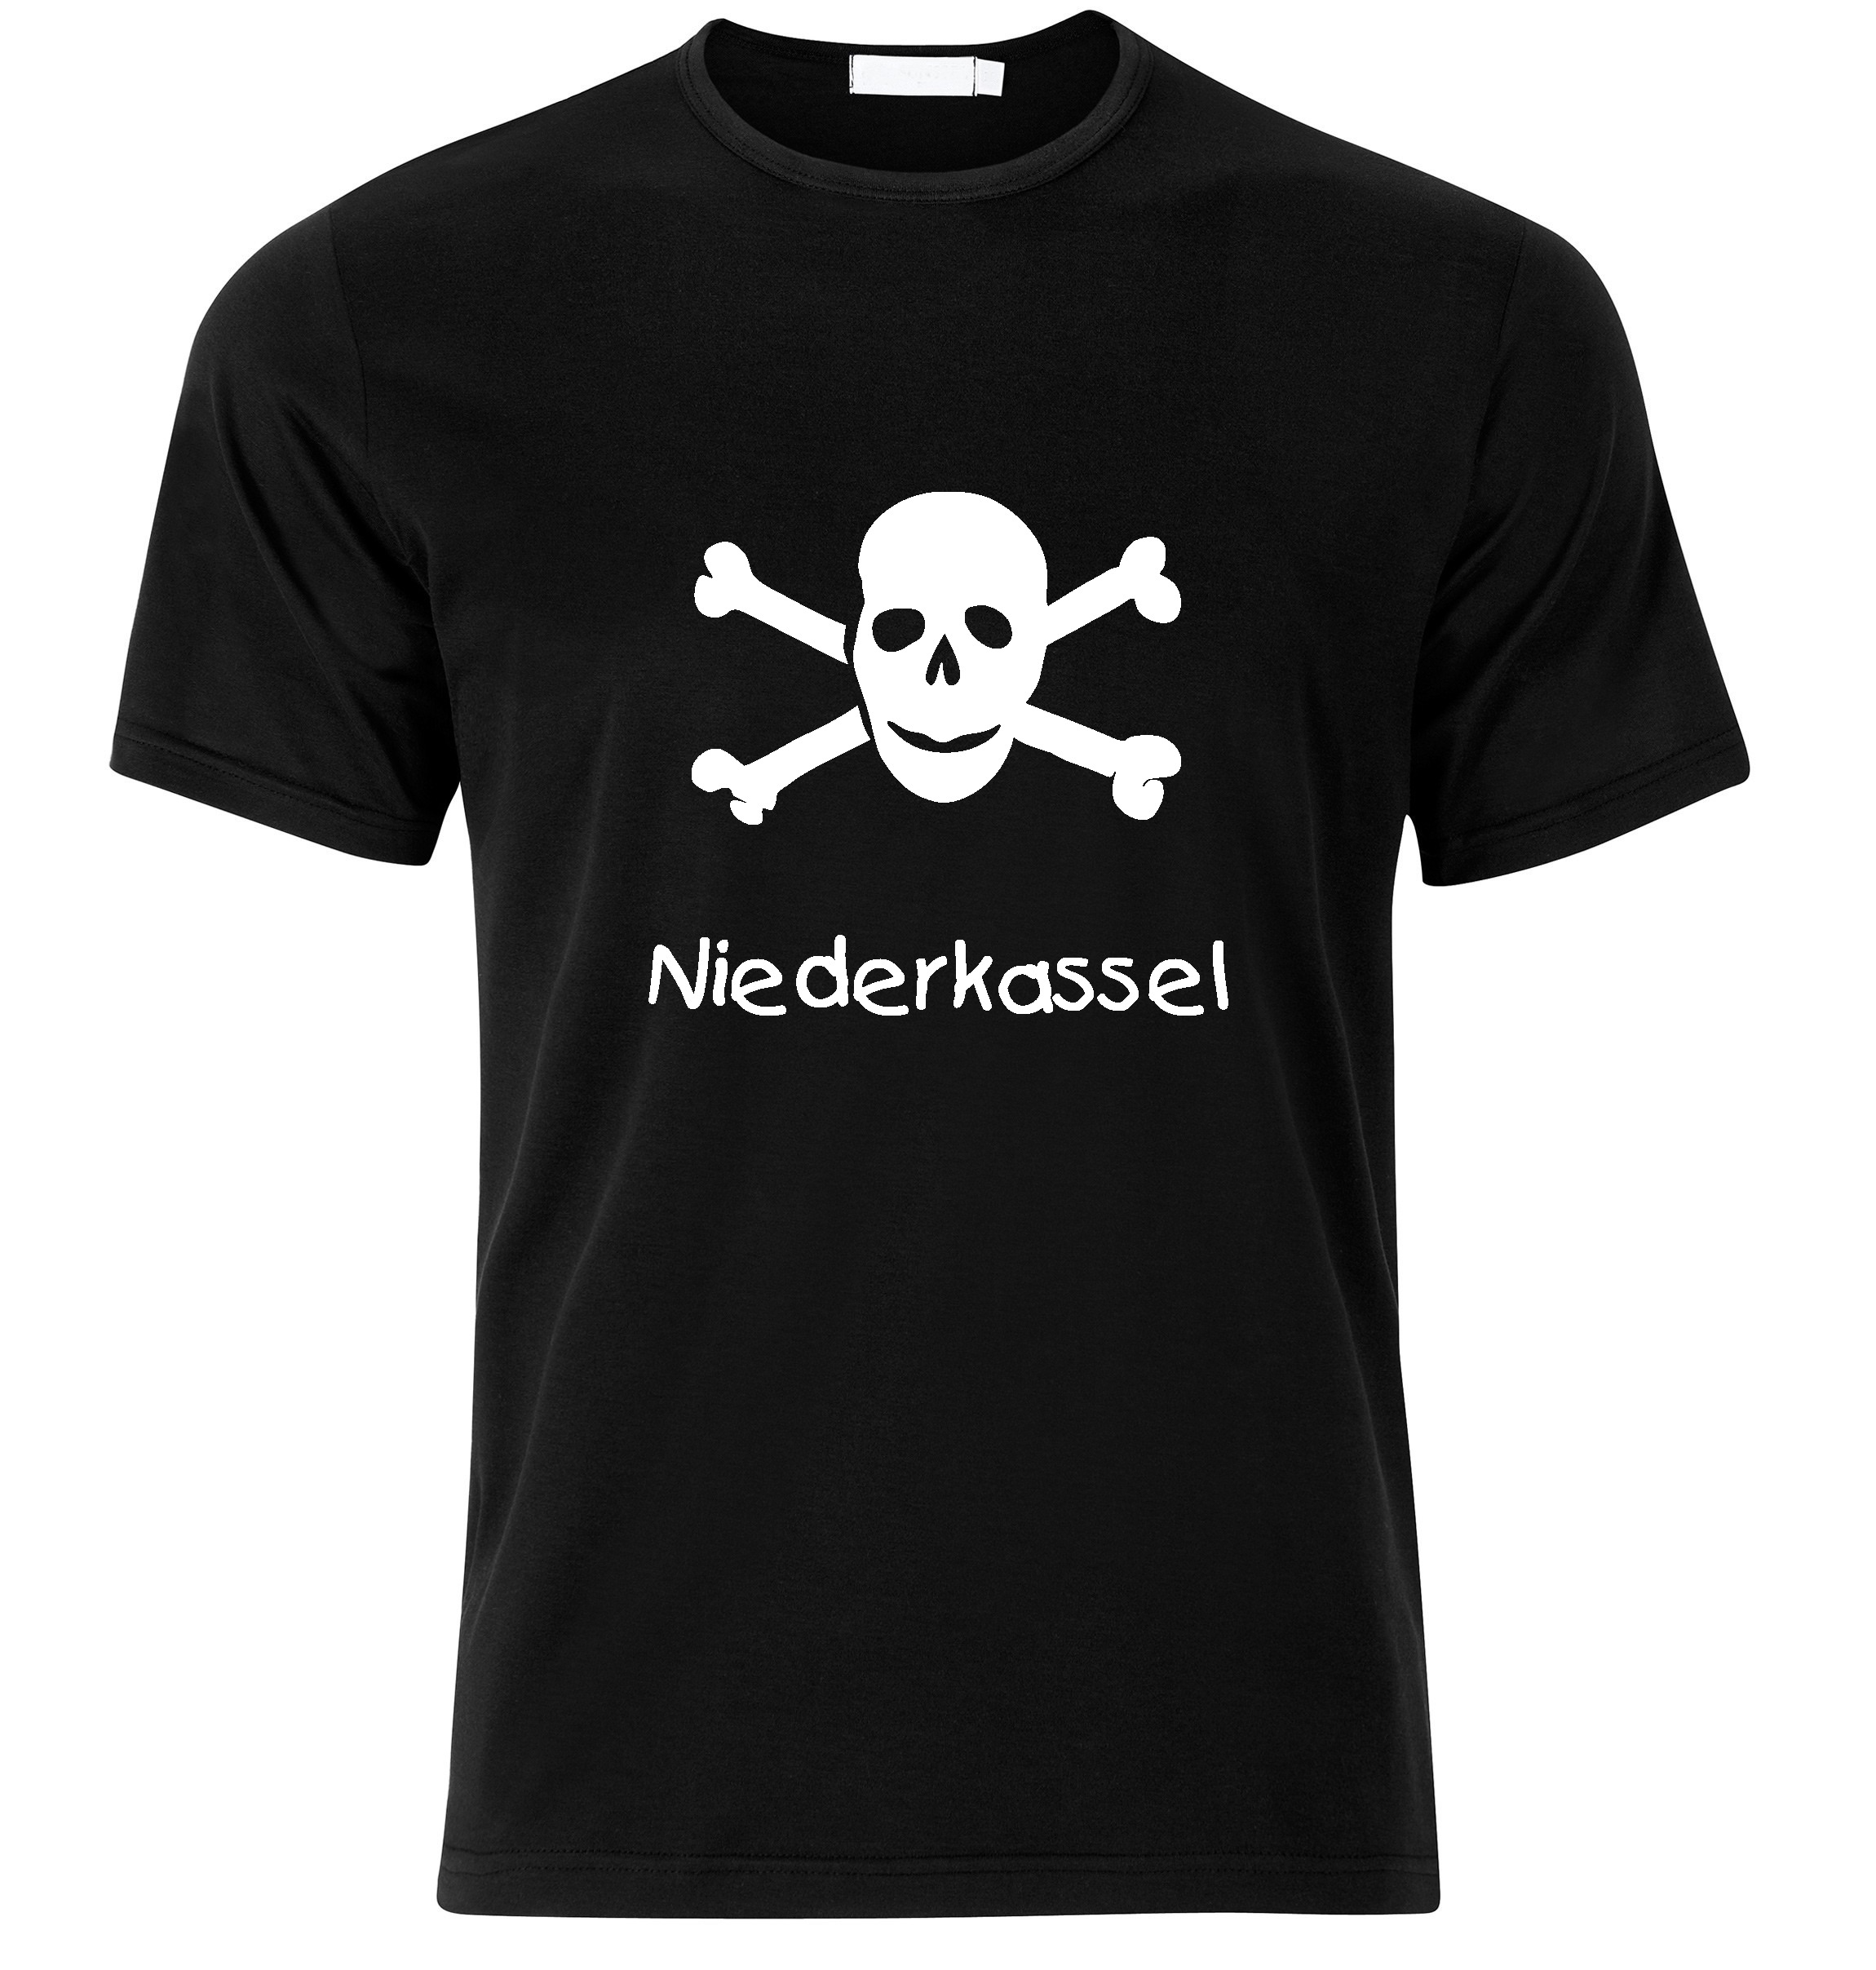 T-Shirt Niederkassel Jolly Roger, Totenkopf